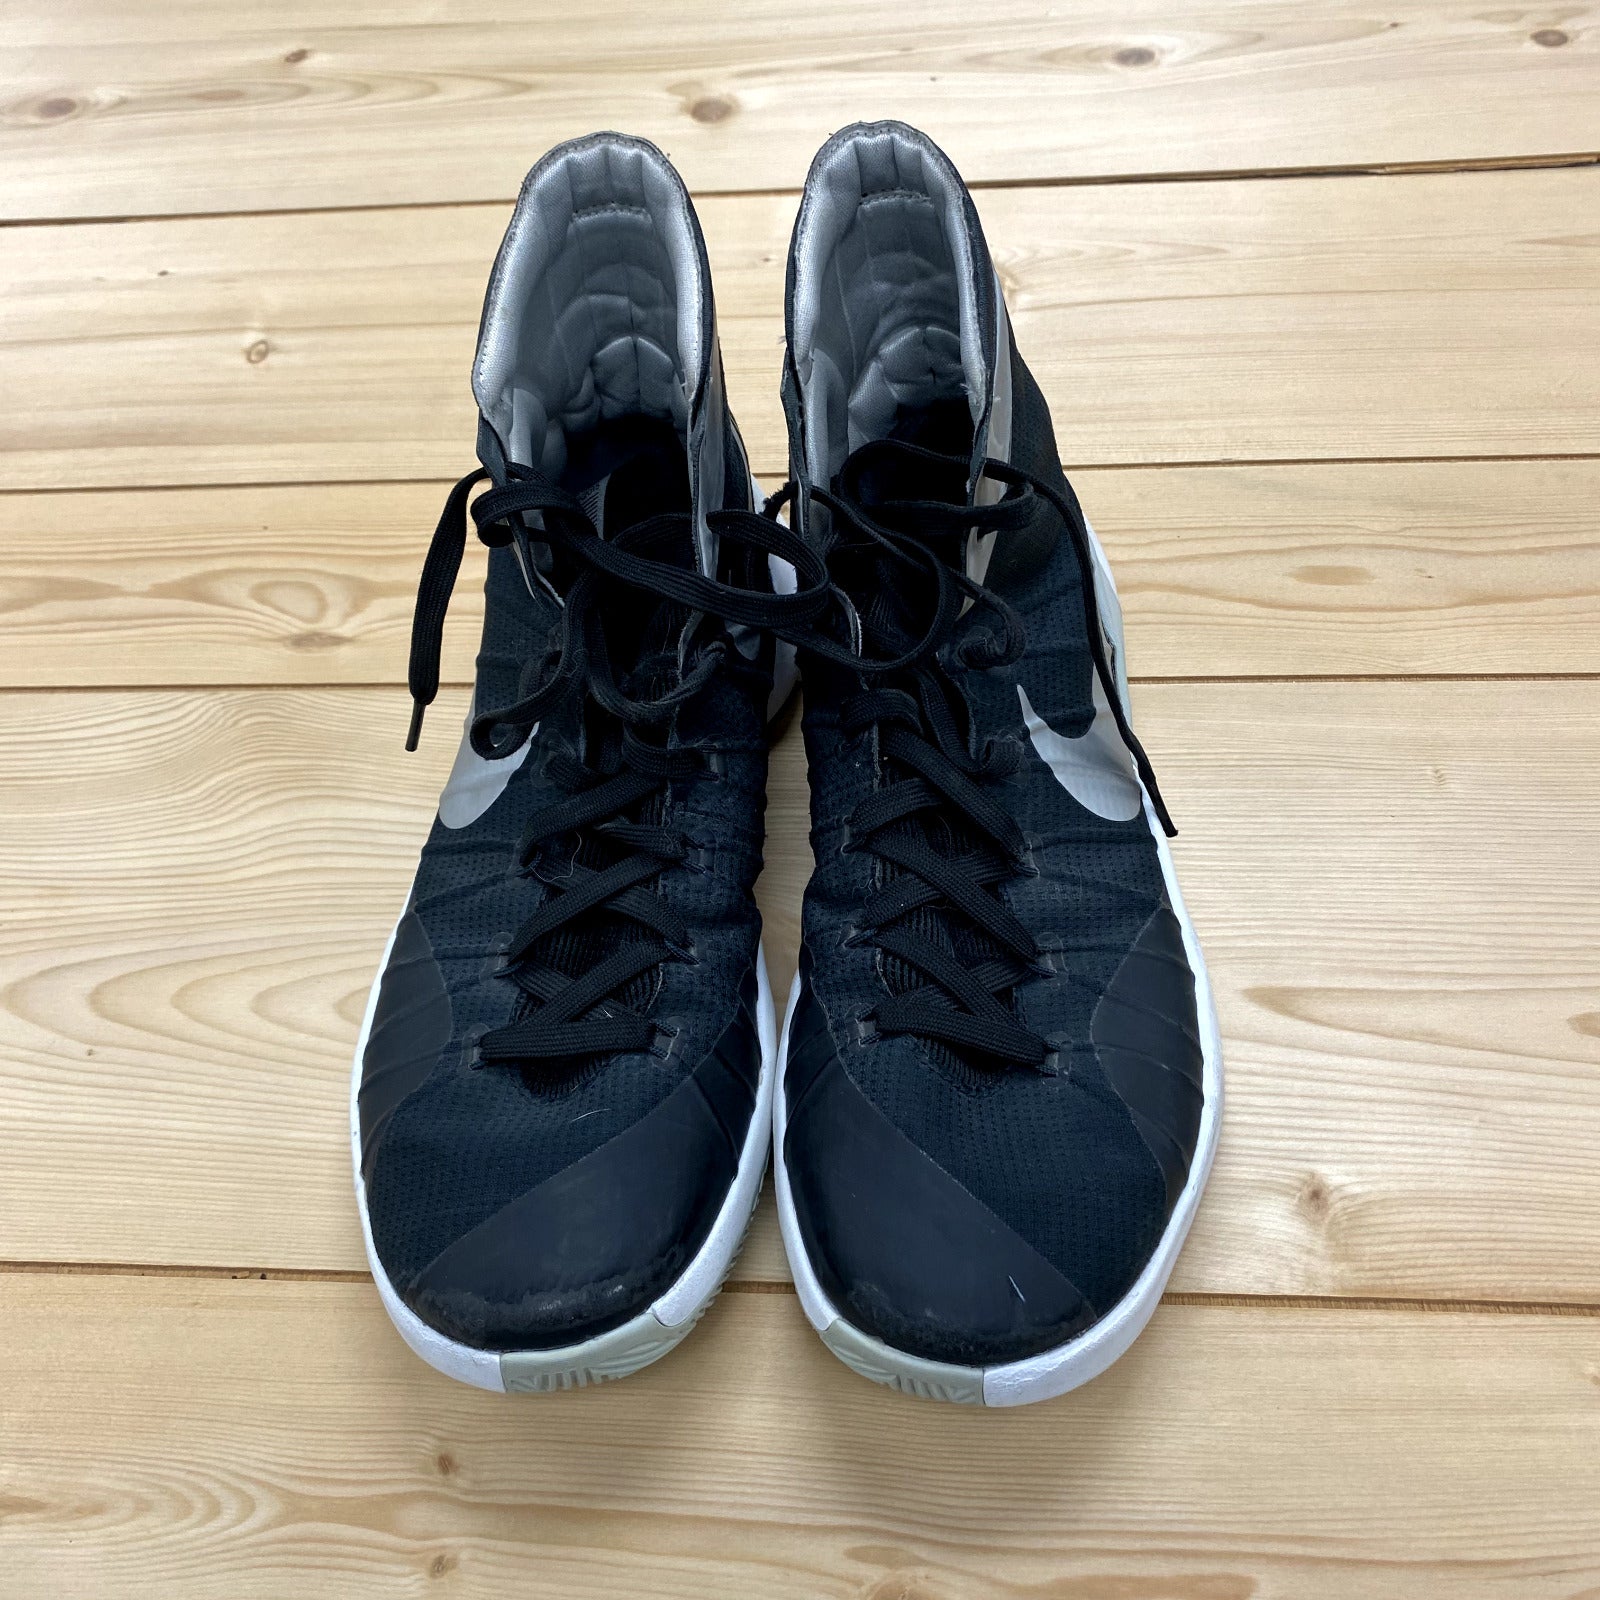 NIKE 749645-001 HYPERDUNK 2015 Basketball Sneakers Shoes Black White Men Sz 10.5